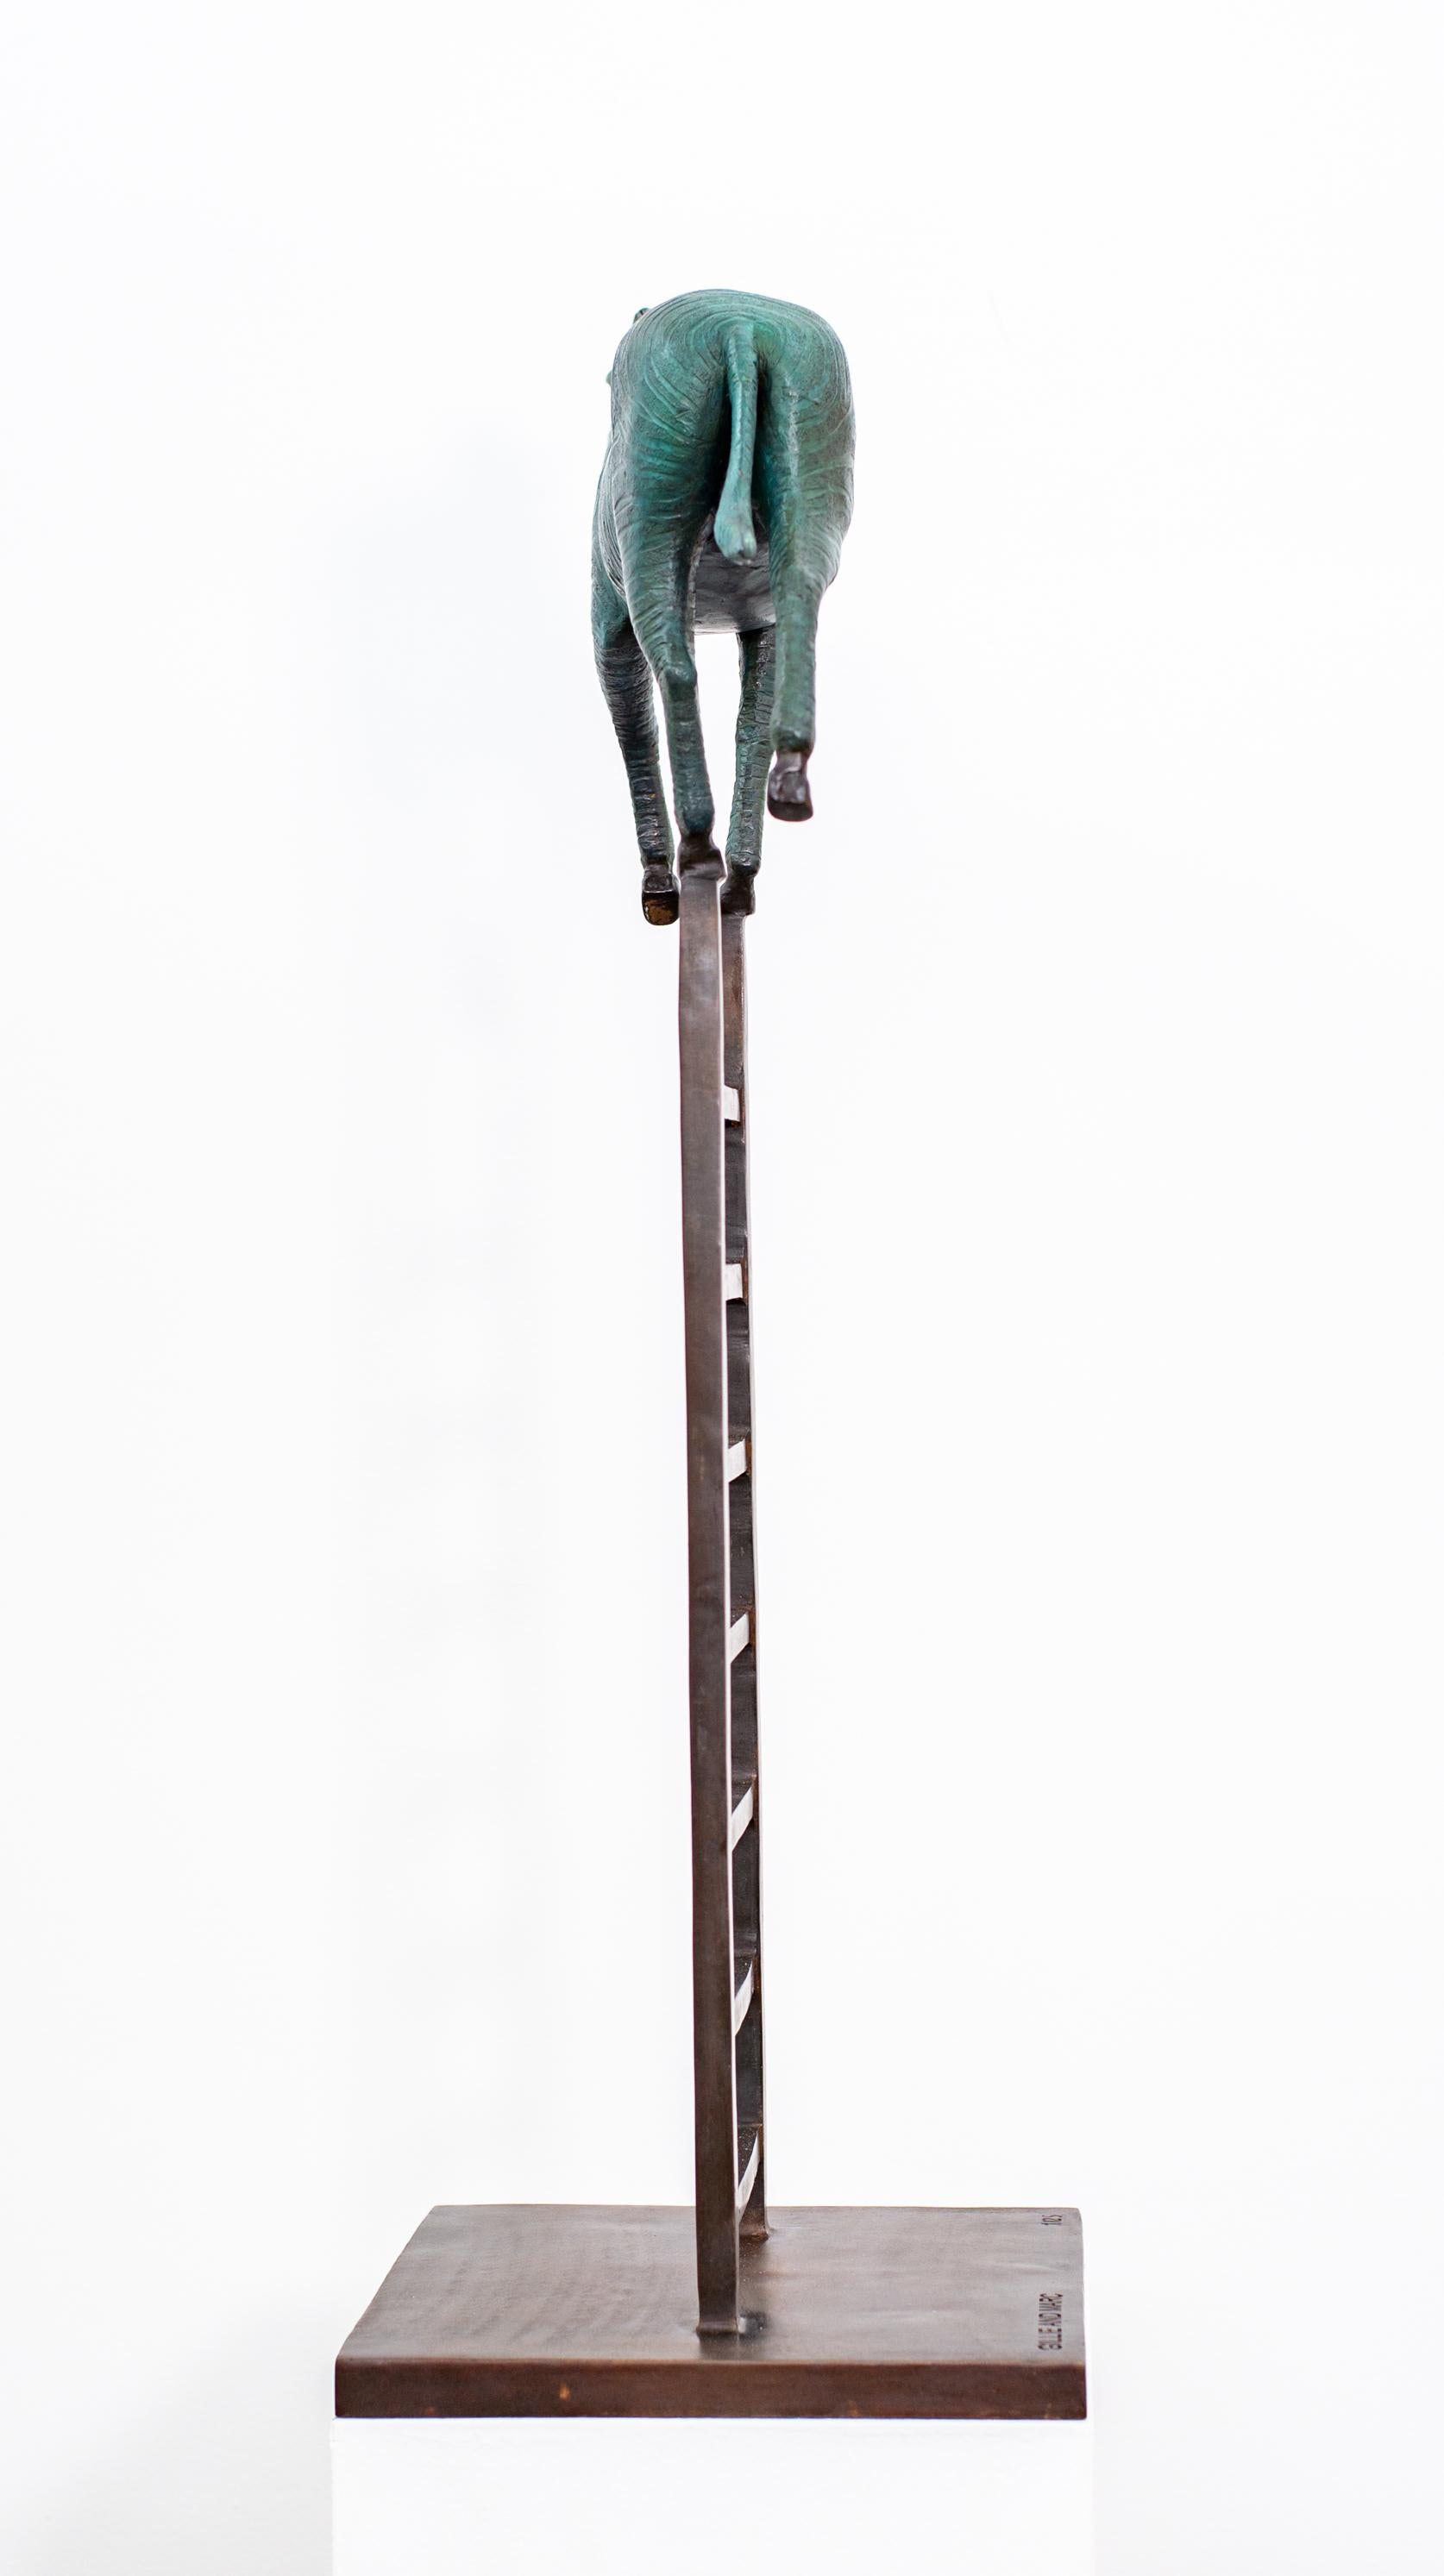 Zebra Reaches New Heights 1/15 - figurative, verspielte Bronzeskulptur, Tischskulptur (Gold), Figurative Sculpture, von Gillie and Marc Schattner